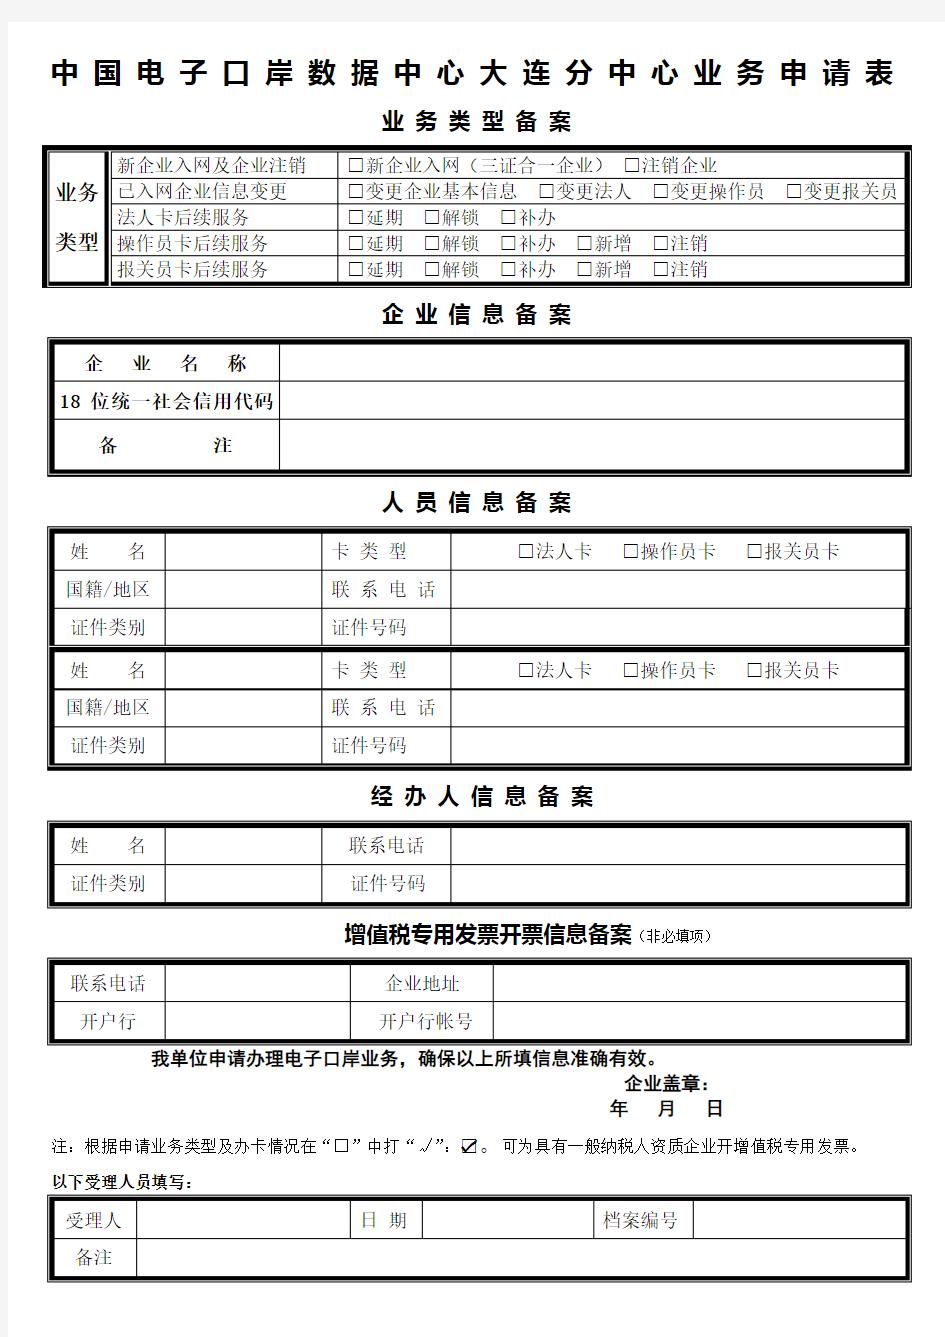 中国电子口岸数据中心大连分中心业务申请表